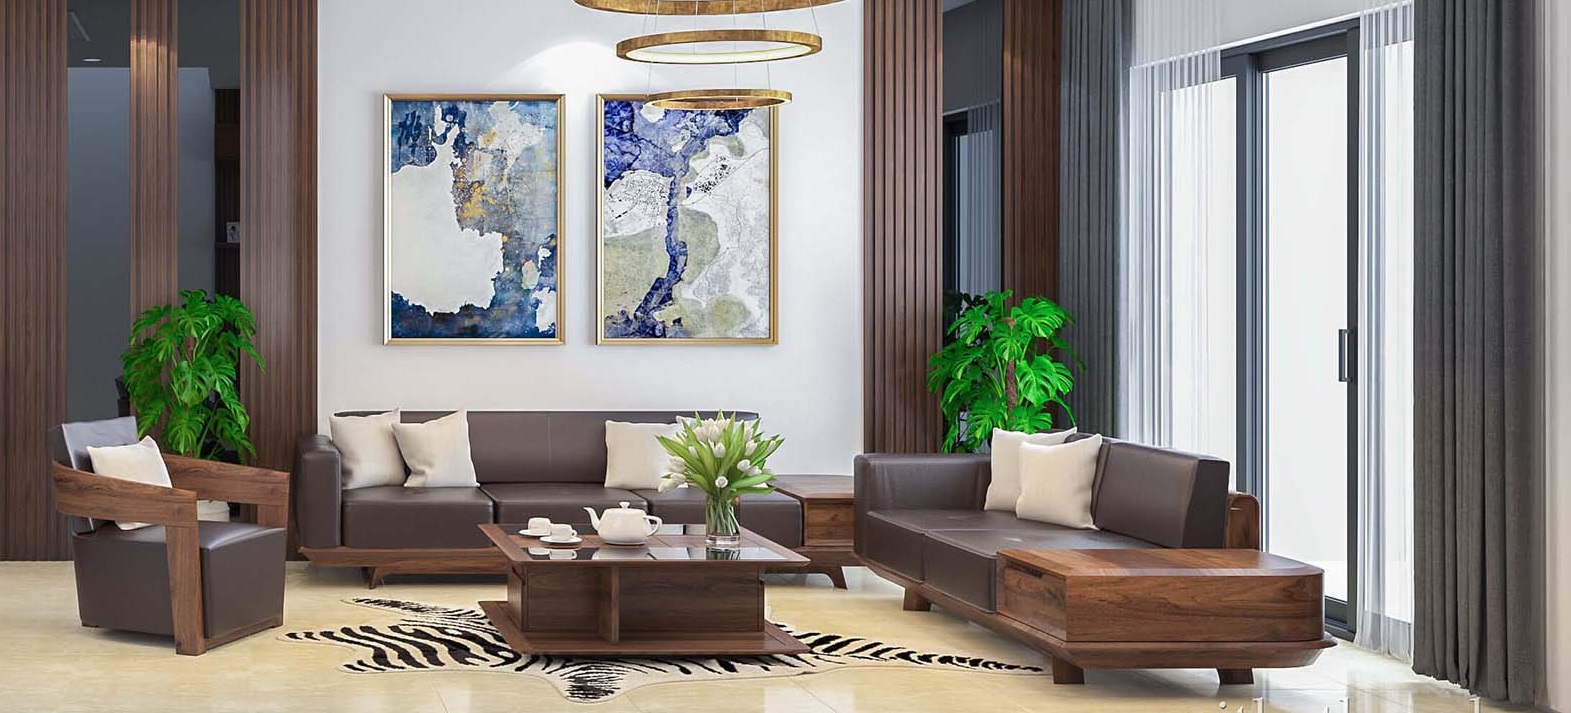 Nội thất phòng khách chung cư là điểm nhấn quan trọng khi trang trí nội thất cho căn hộ của bạn. Hãy mua bàn ghế gỗ phòng khách chung cư để tạo nên không gian hiện đại, sang trọng và thoải mái cho ngôi nhà của bạn. Với sản phẩm bàn ghế gỗ đa dạng về kiểu dáng, màu sắc và chất liệu đẹp, bạn chắc chắn sẽ tìm được thiết kế phù hợp nhất cho căn hộ của mình.